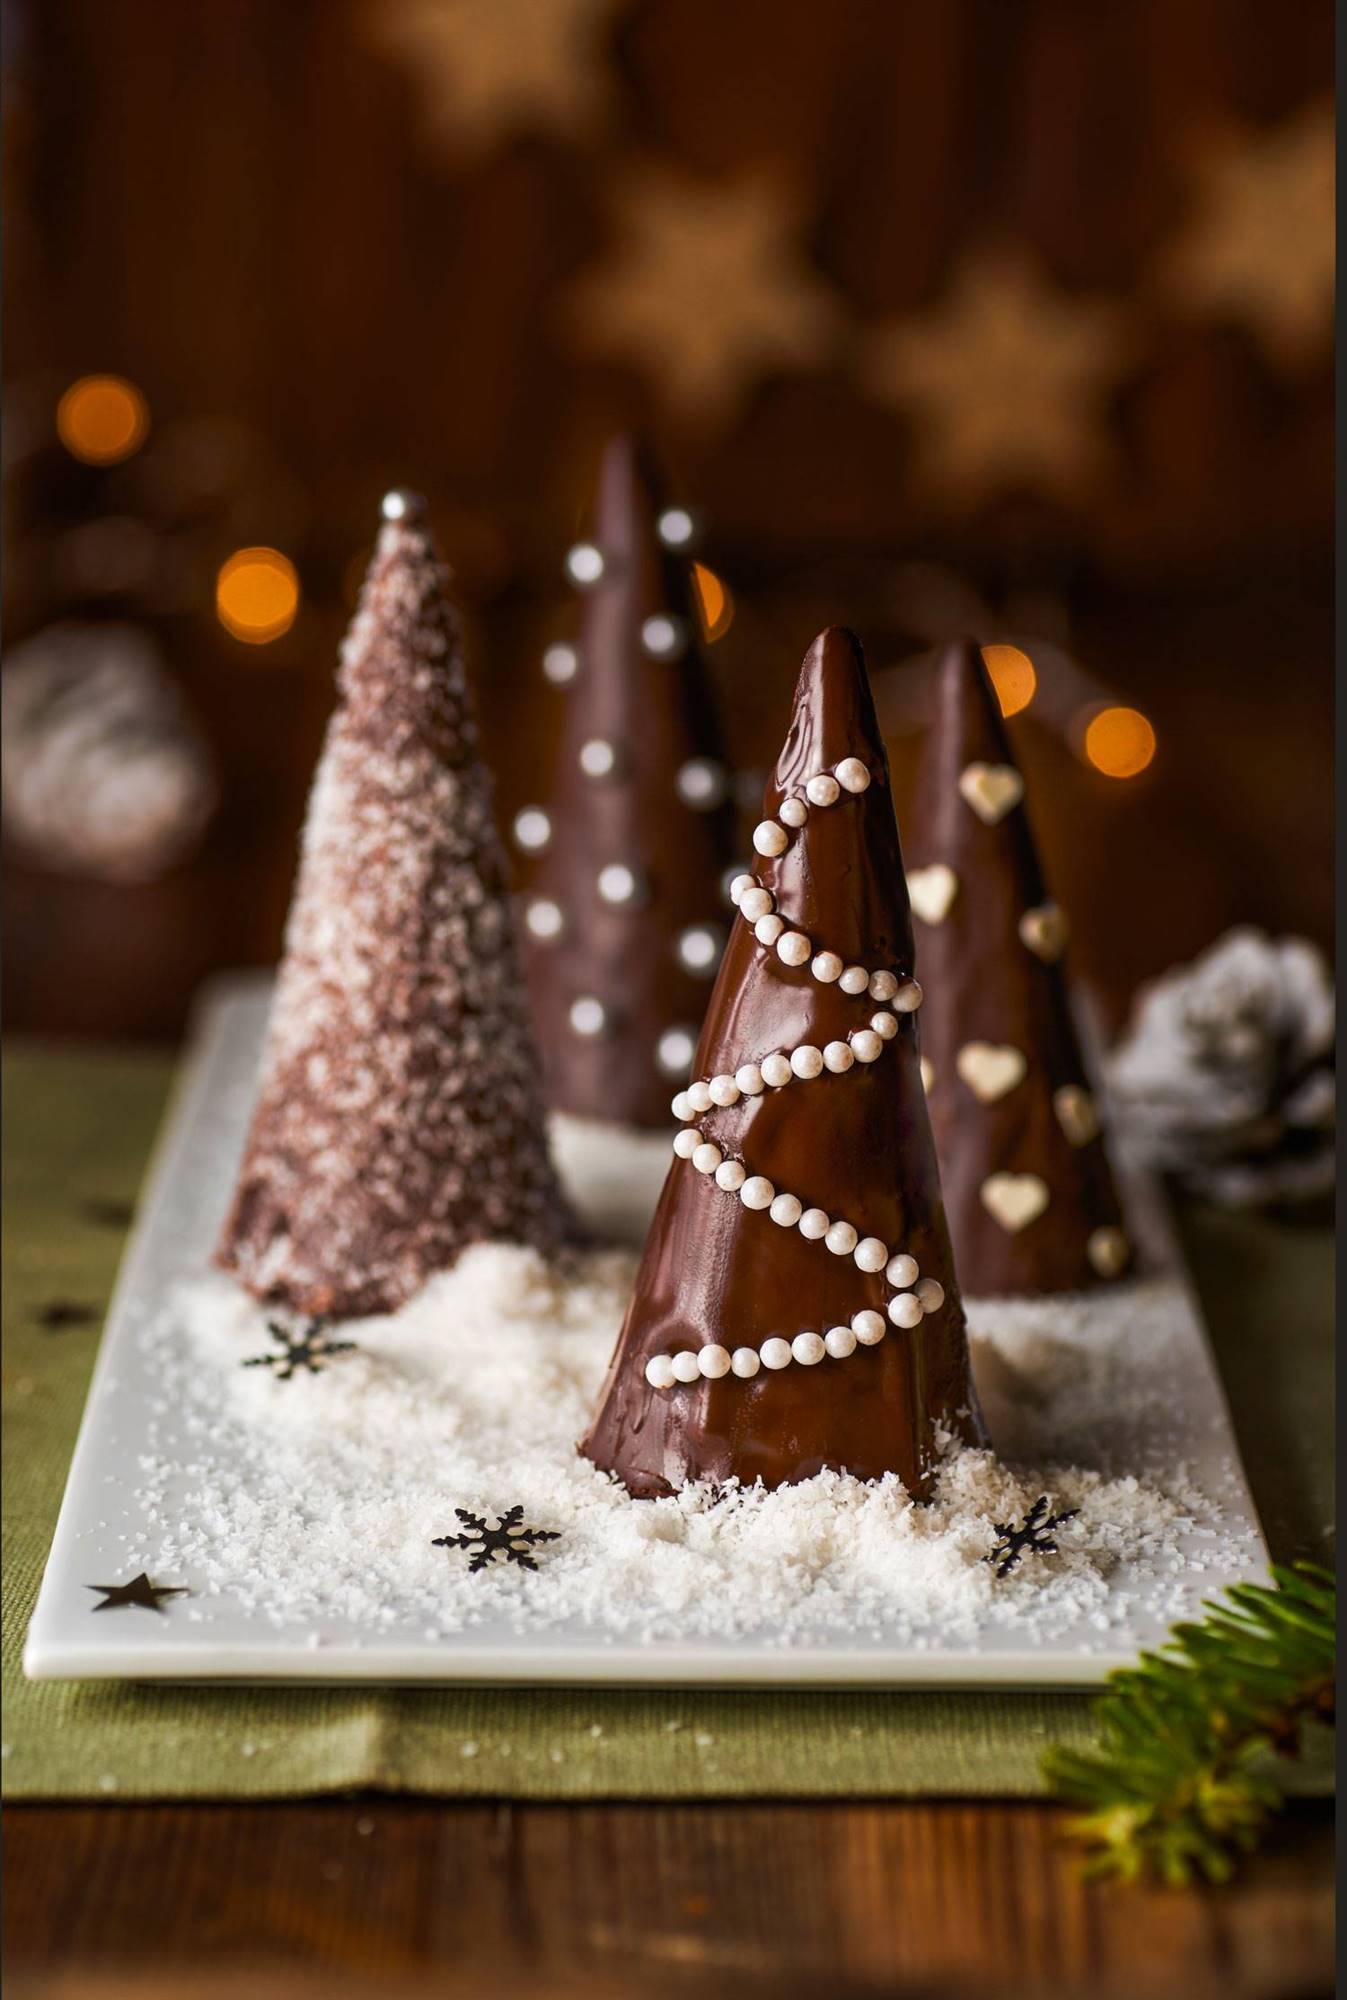 Menú de Navidad, postre: arbolitos de chocolate.